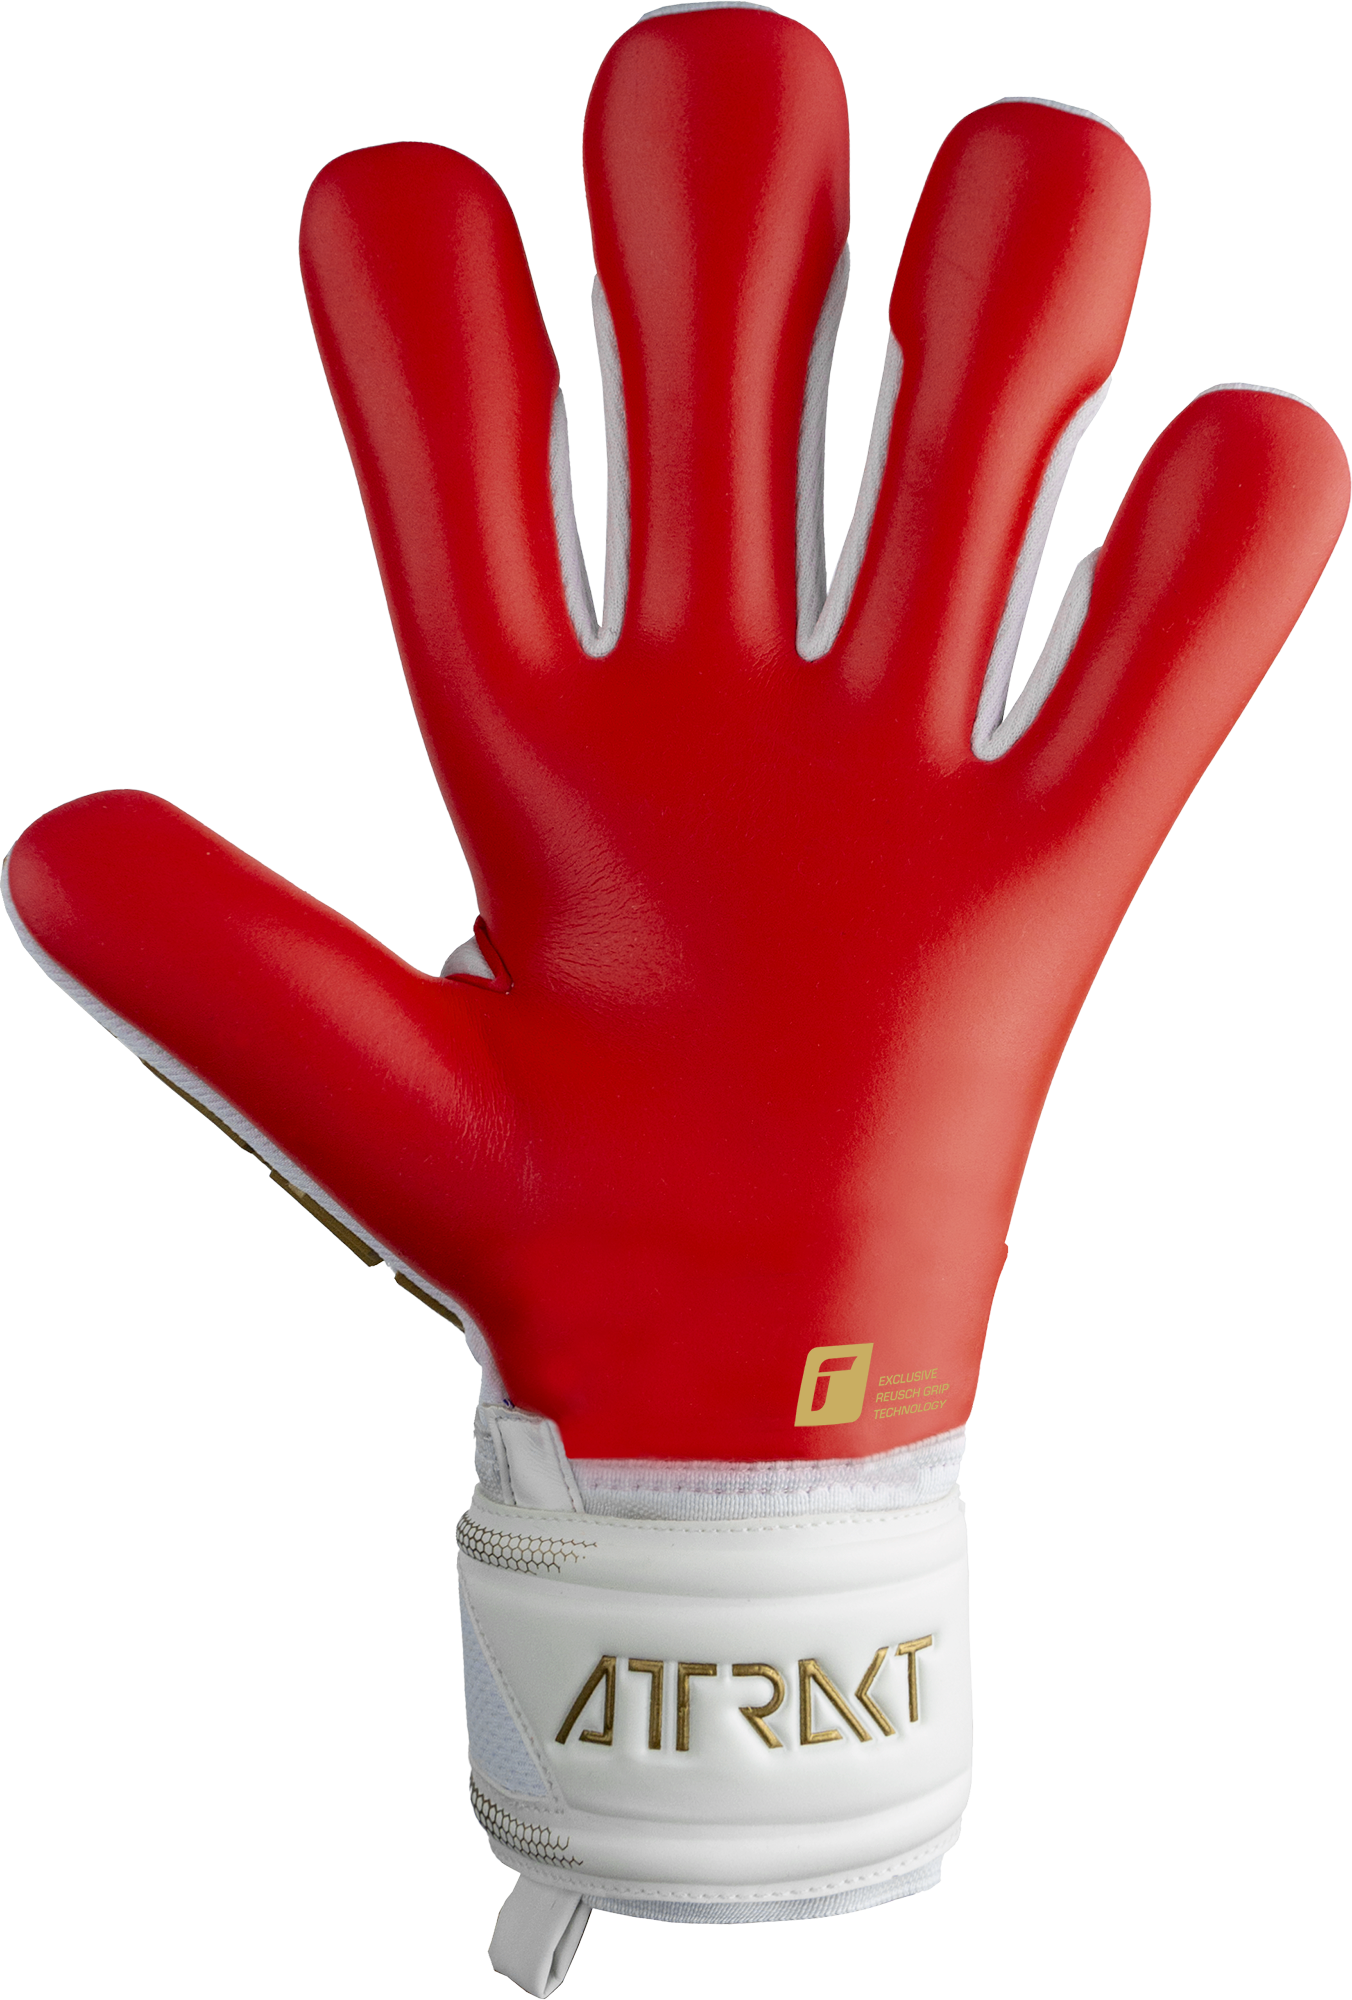 Reusch Attrakt Freegel™ Silver Finger Support™ Goalkeeper Gloves